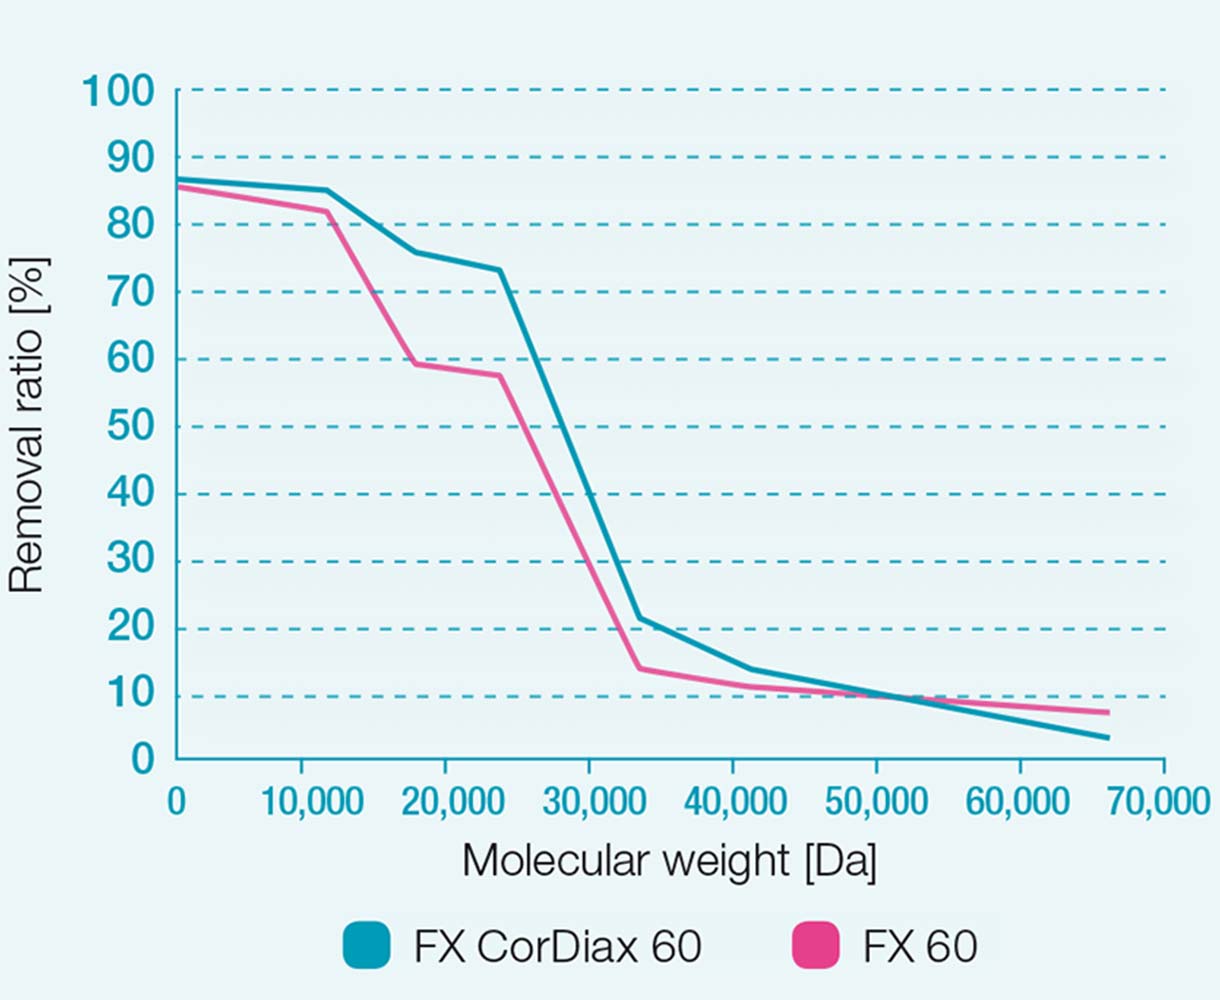 FX 60 ve FX CorDiax 60 diyalizerlerin